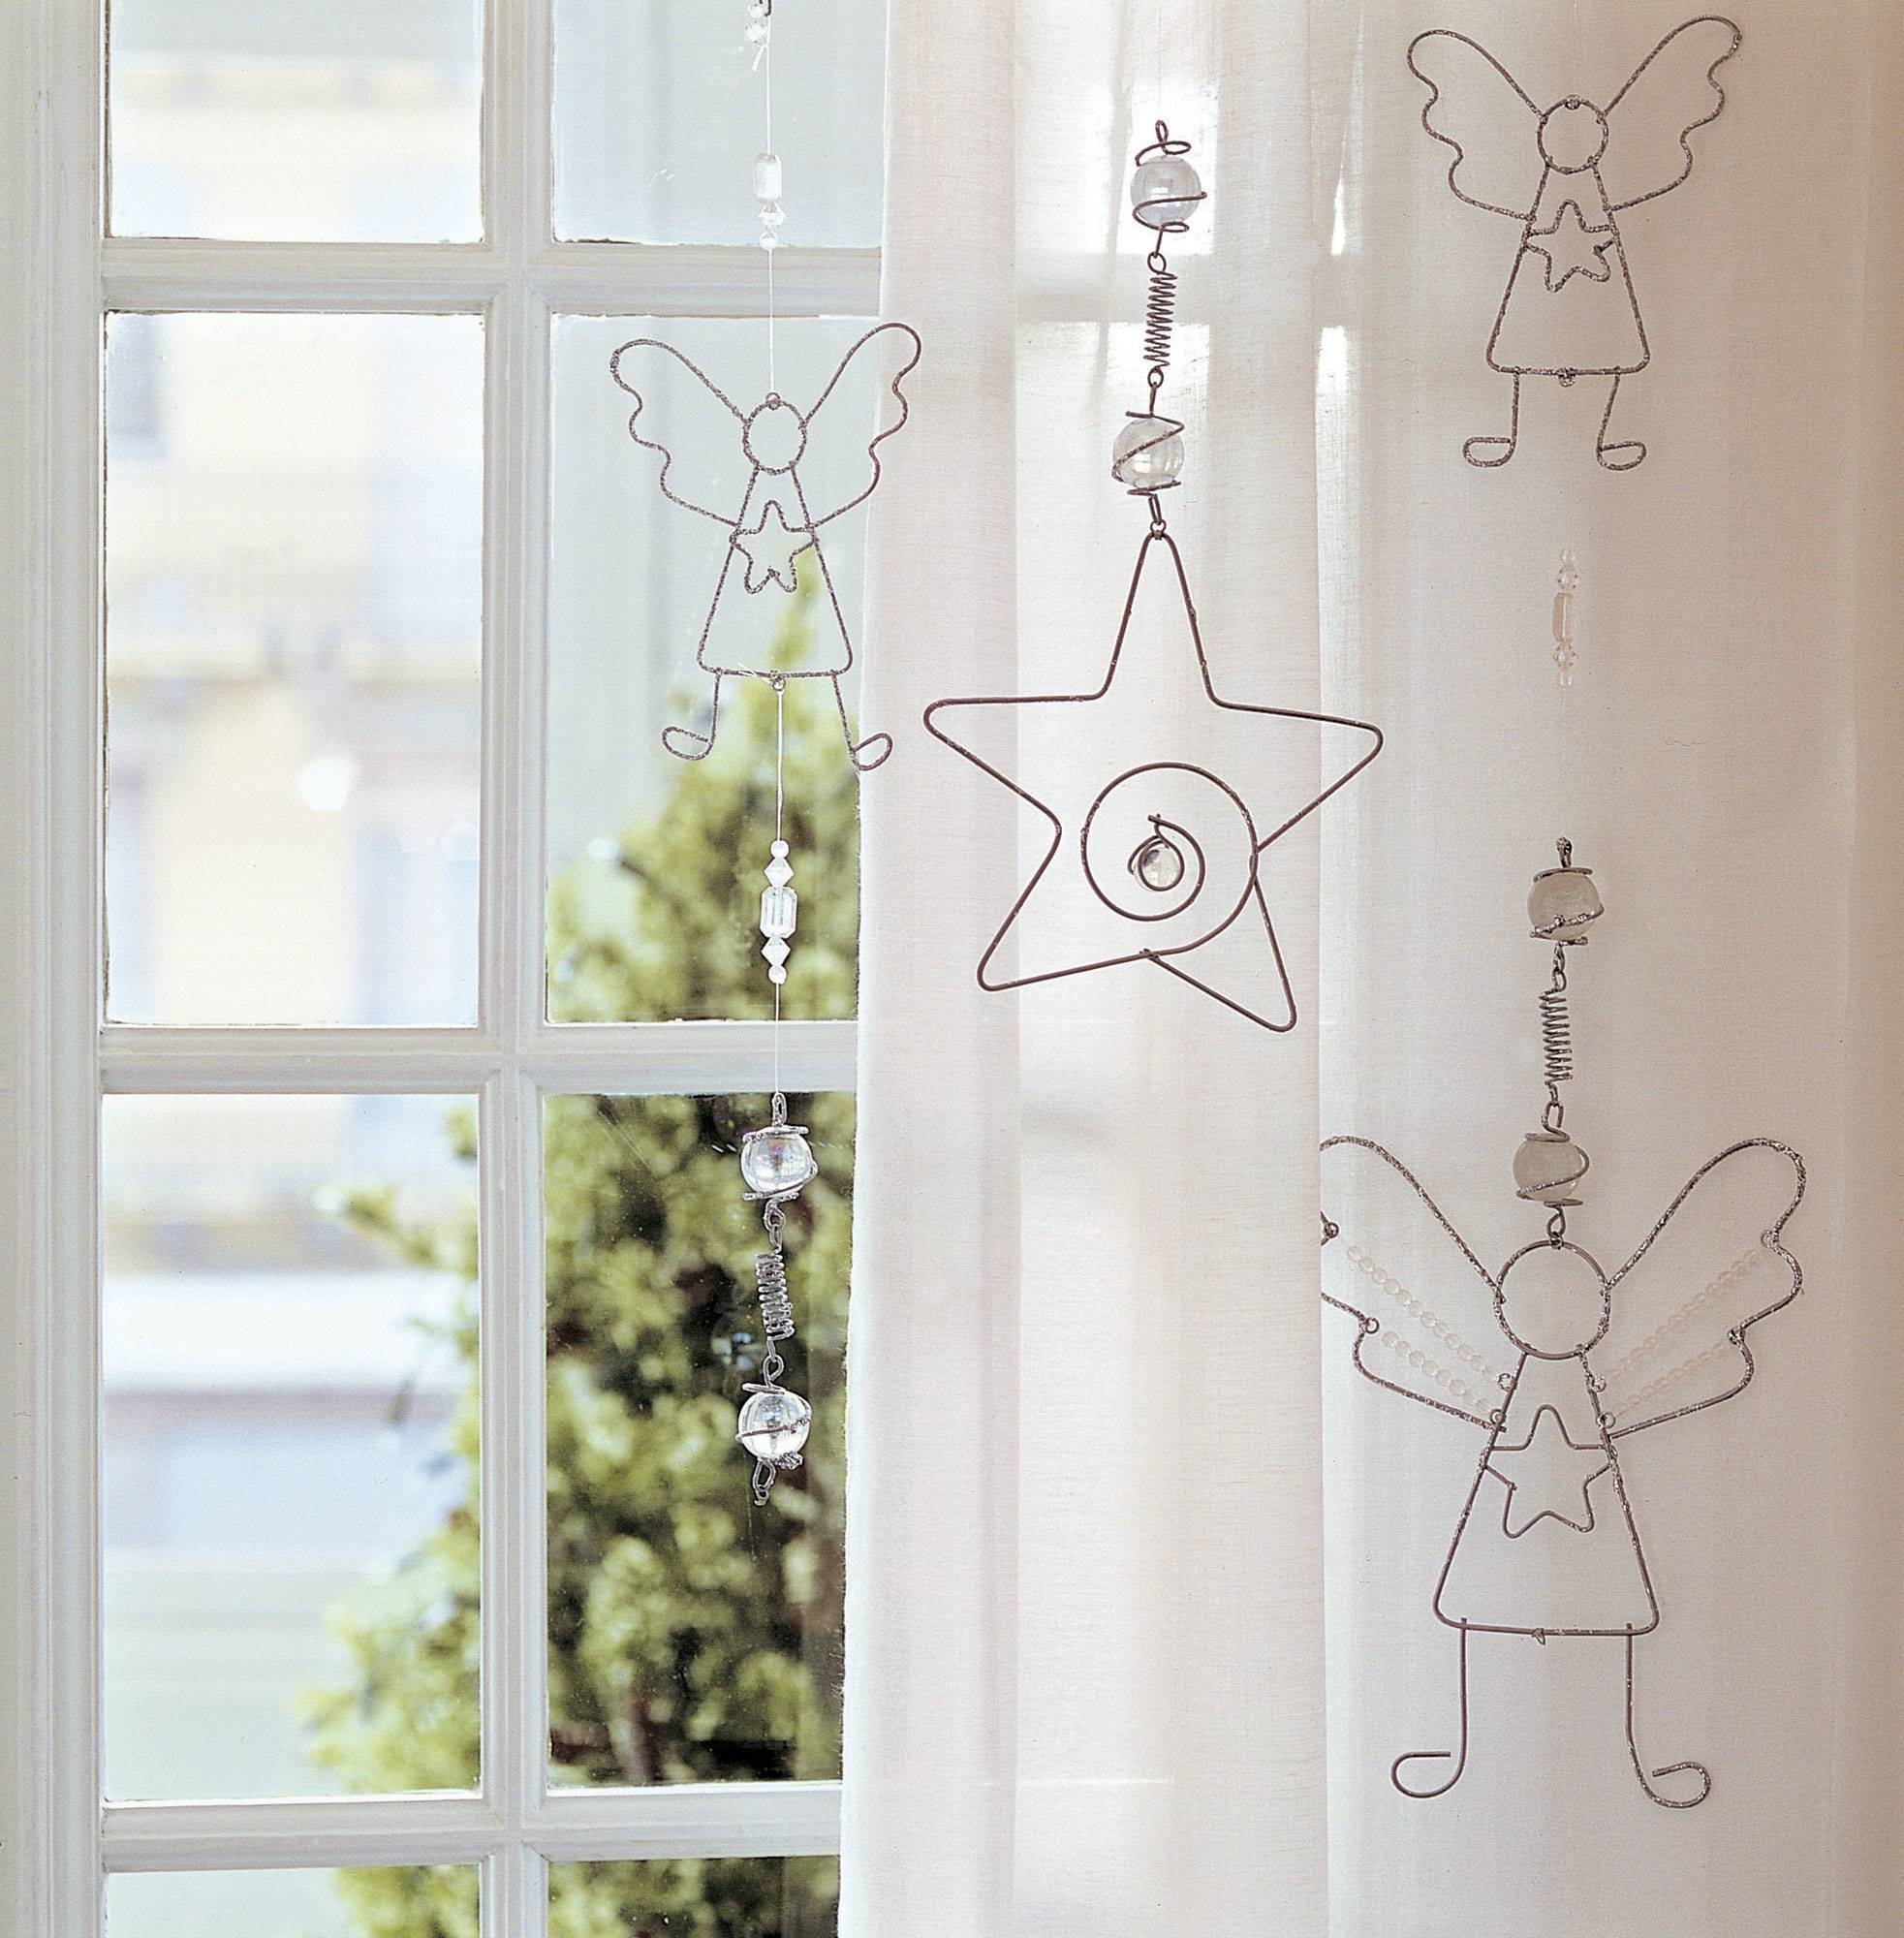 Detalle decorativo de guirnalda de ángeles hecha de alambre para vestir la ventana.